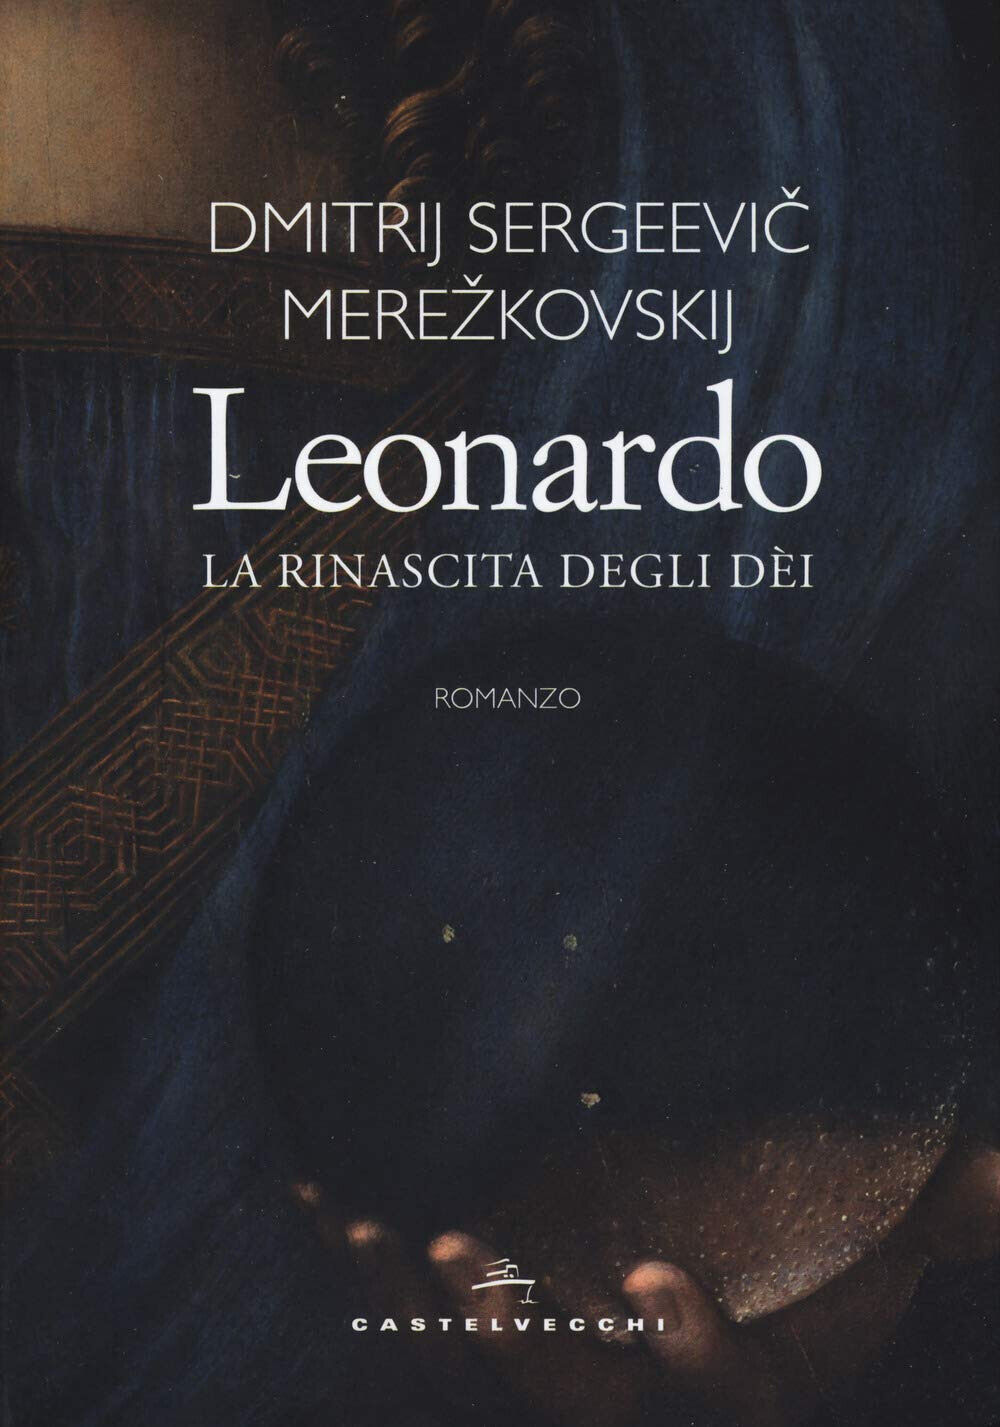 Leonardo. La rinascita degli d?i - Dimitrij Sergeevic Merezkovskij - 2019 libro usato